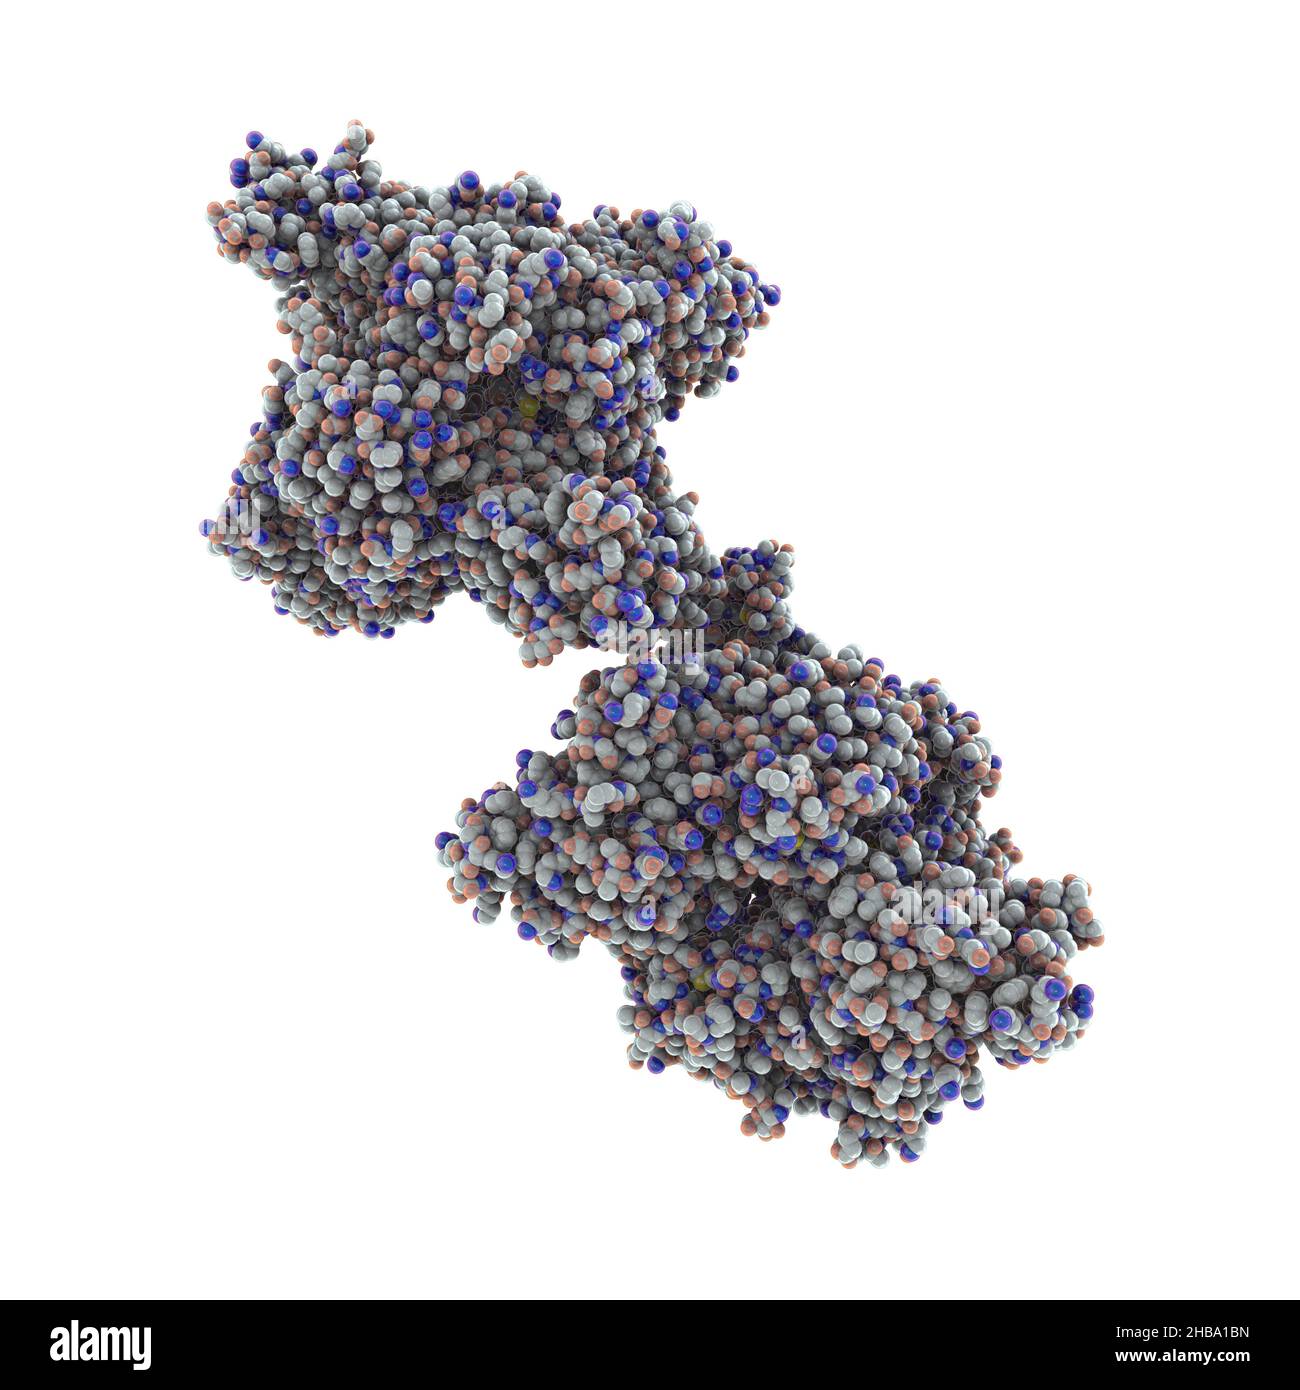 Molécula de la enzima beta-hexosaminidasa A, o HEXA, ilustración. Las mutaciones en el gen que codifica HEXA disminuyen la hidrólisis de GM2 gangliósidos, que es la causa principal de la enfermedad de Tay-Sachs. Foto de stock